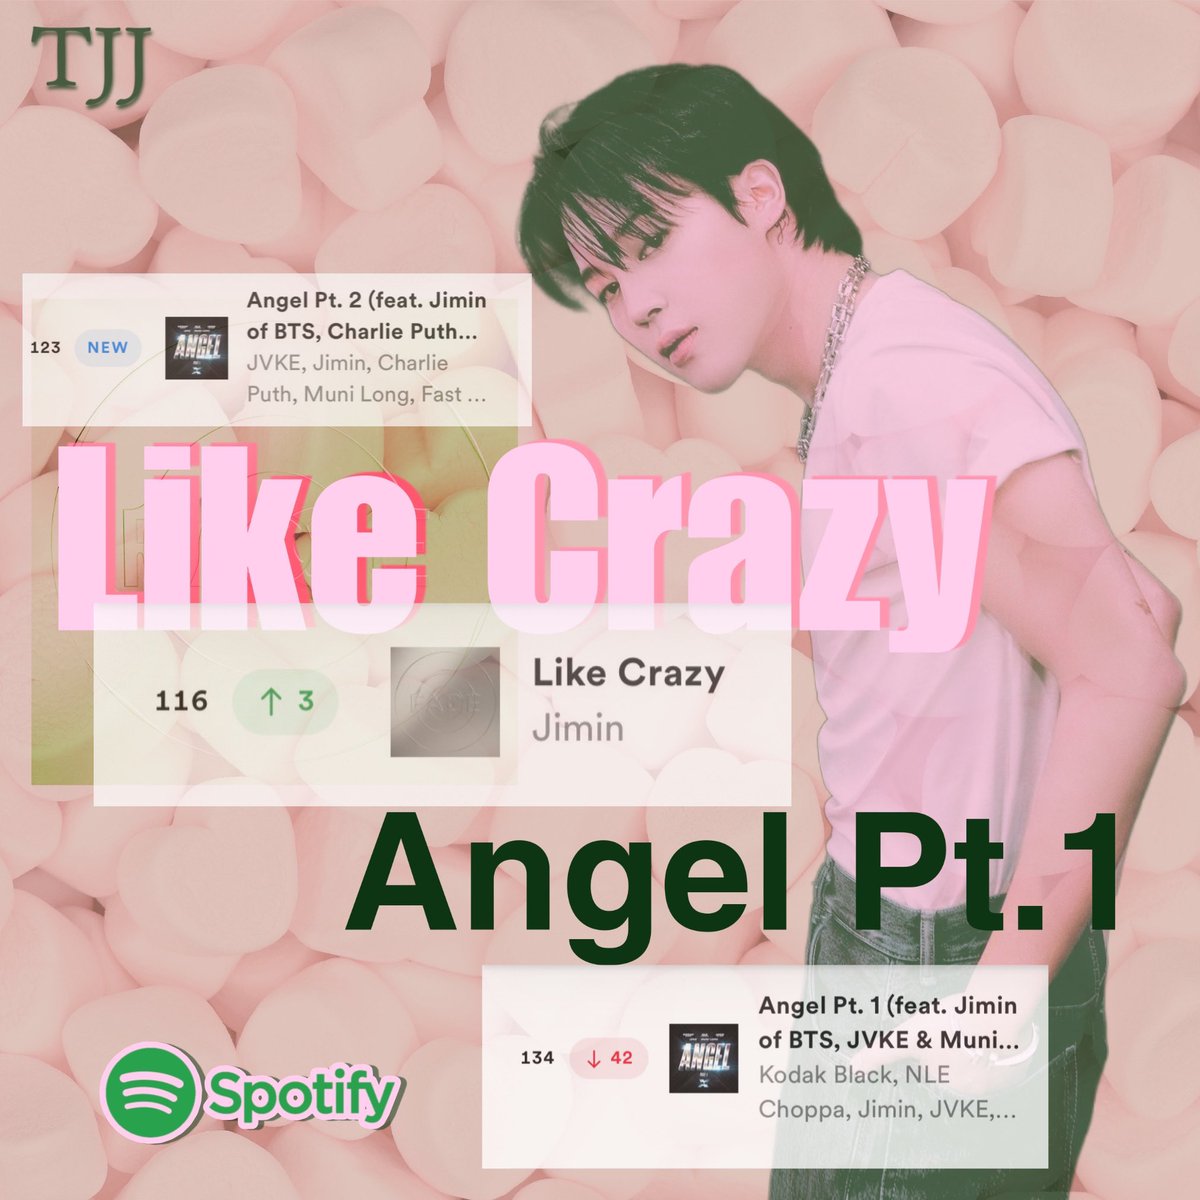 🟢 Spotify Daily Top Songs Japan🐥
6/16 付

🟡 Like Crazy ✨
6/15  54,878 回 
6/16  53,493 回 ↘︎

⚪️ Angel Pt.1
6/15  58,657 回 
6/16  48,998 回 ↘︎

🟡 Angel Pt.2
NEW 6/16 51,370 回

ANGEL PT2 OUT NOW
#Angel_Pt2 
#AngelPt2OutNow
JIMIN FOR FASTX SAGA
#FASTXxJIMIN